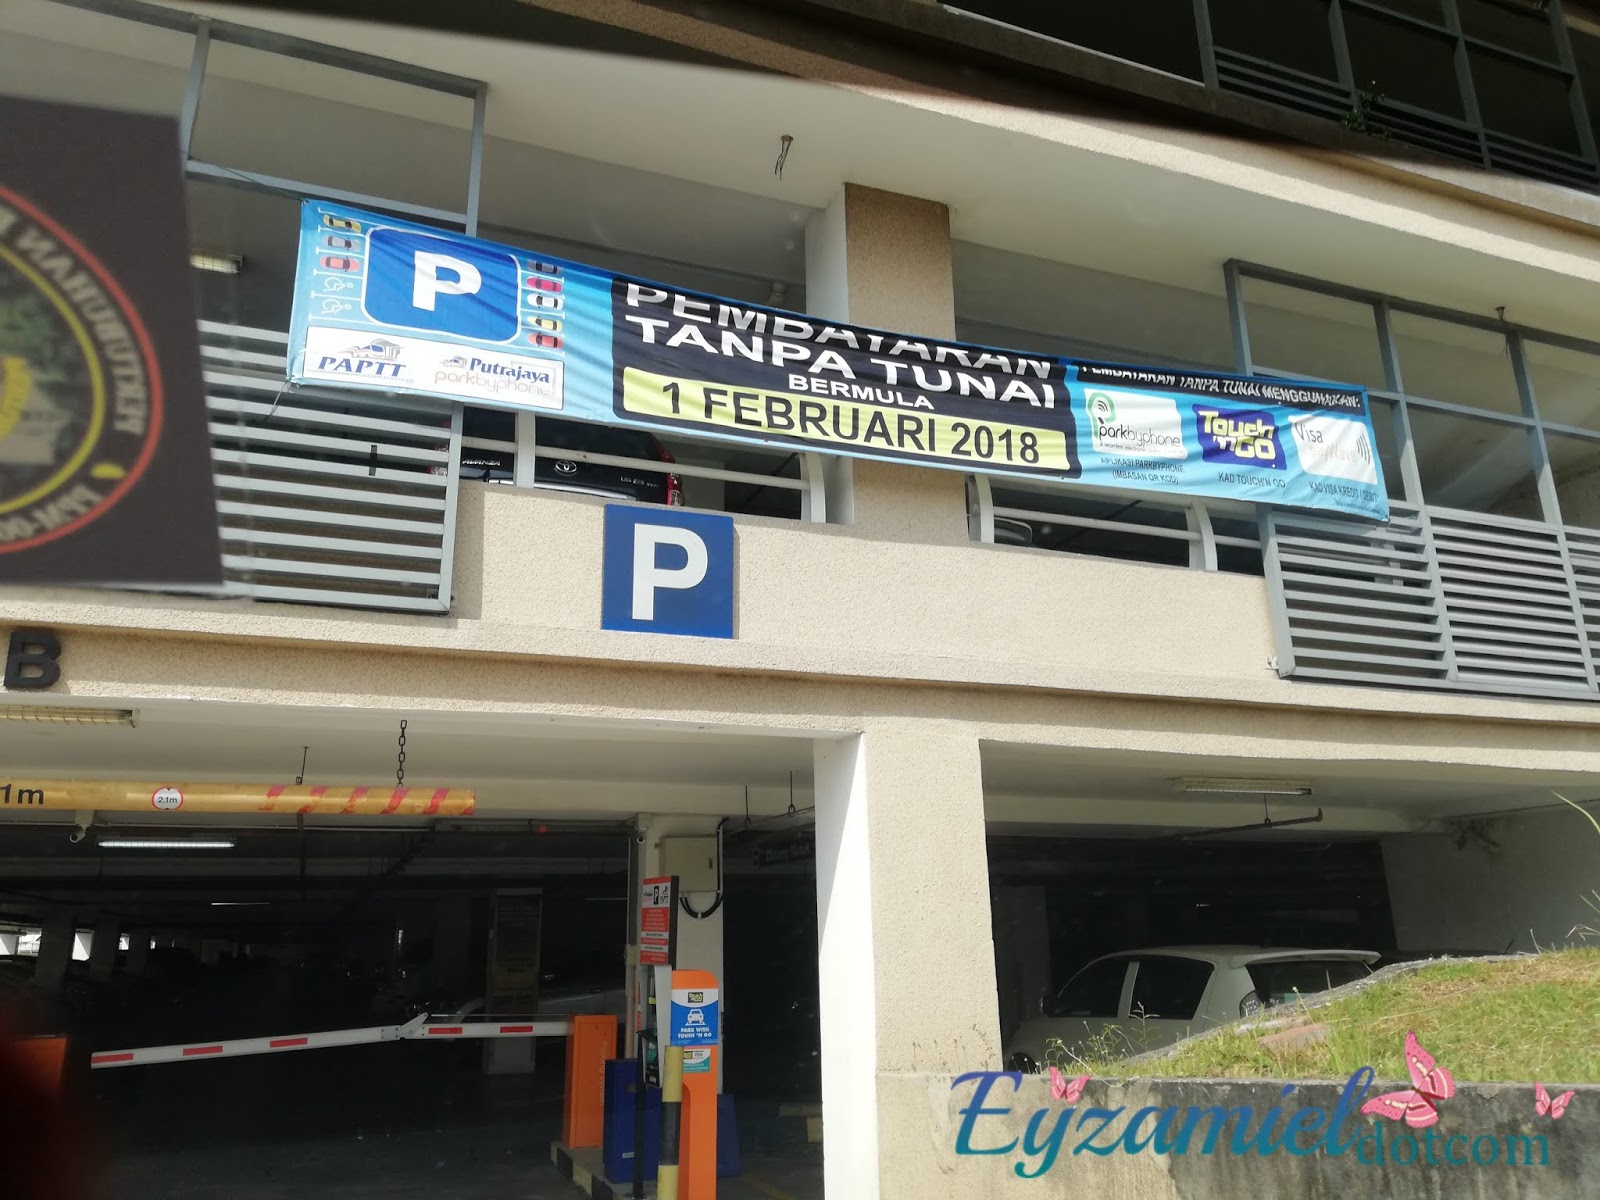 Parking di Putrajaya Sentral untuk ke KLIA / KLIA2 - Blog ...